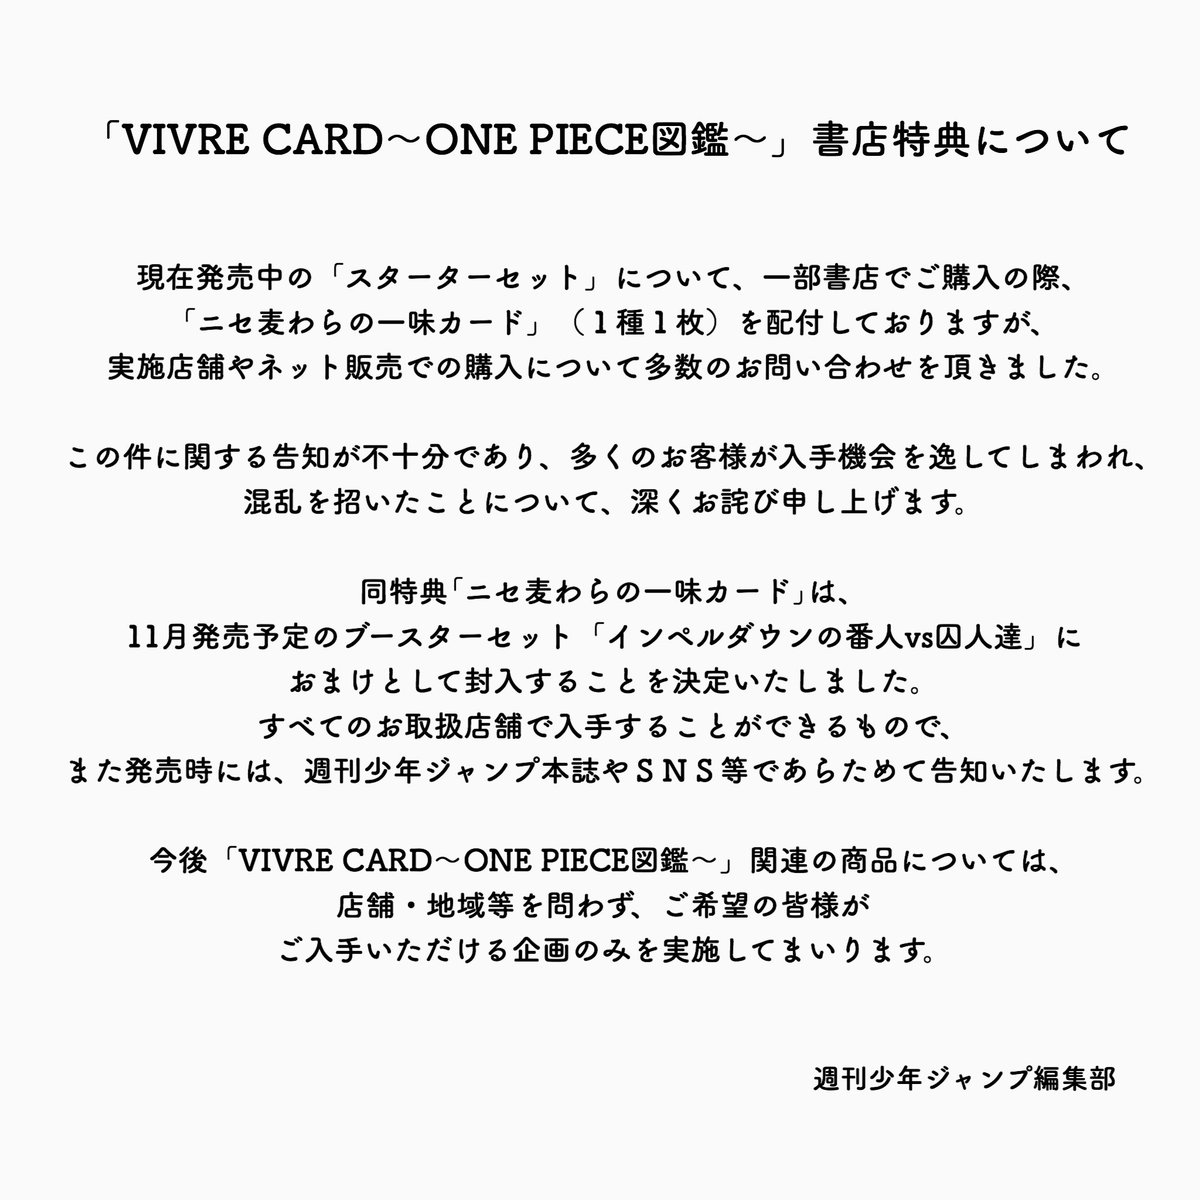 One Pieceスタッフ 公式 本日発売の Vivre Card One Piece図鑑 書店特典について 告知が不十分で 混乱を招いたことについて心よりお詫び申し上げます 編集部よりお詫びとおしらせ 及び 尾田先生からのコメント を掲載いたします こちらの画像